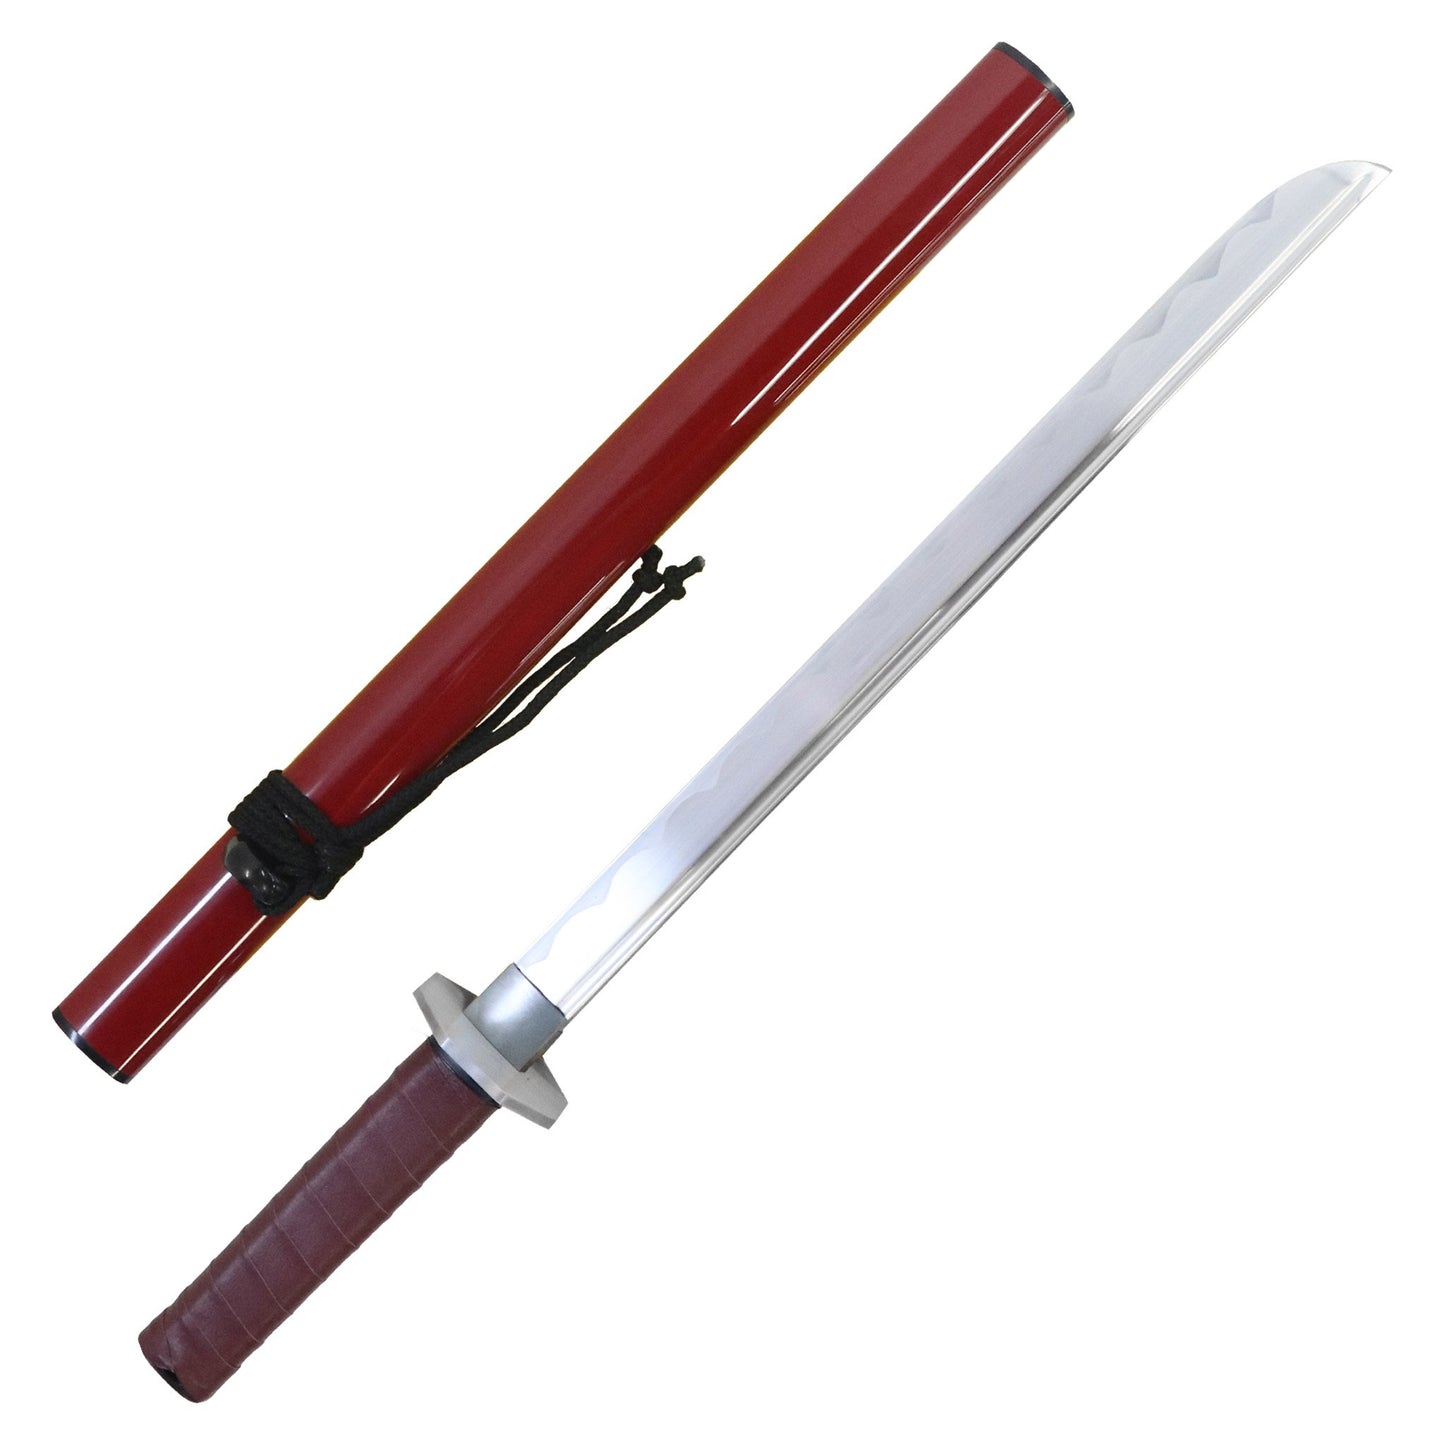 Demo Sword